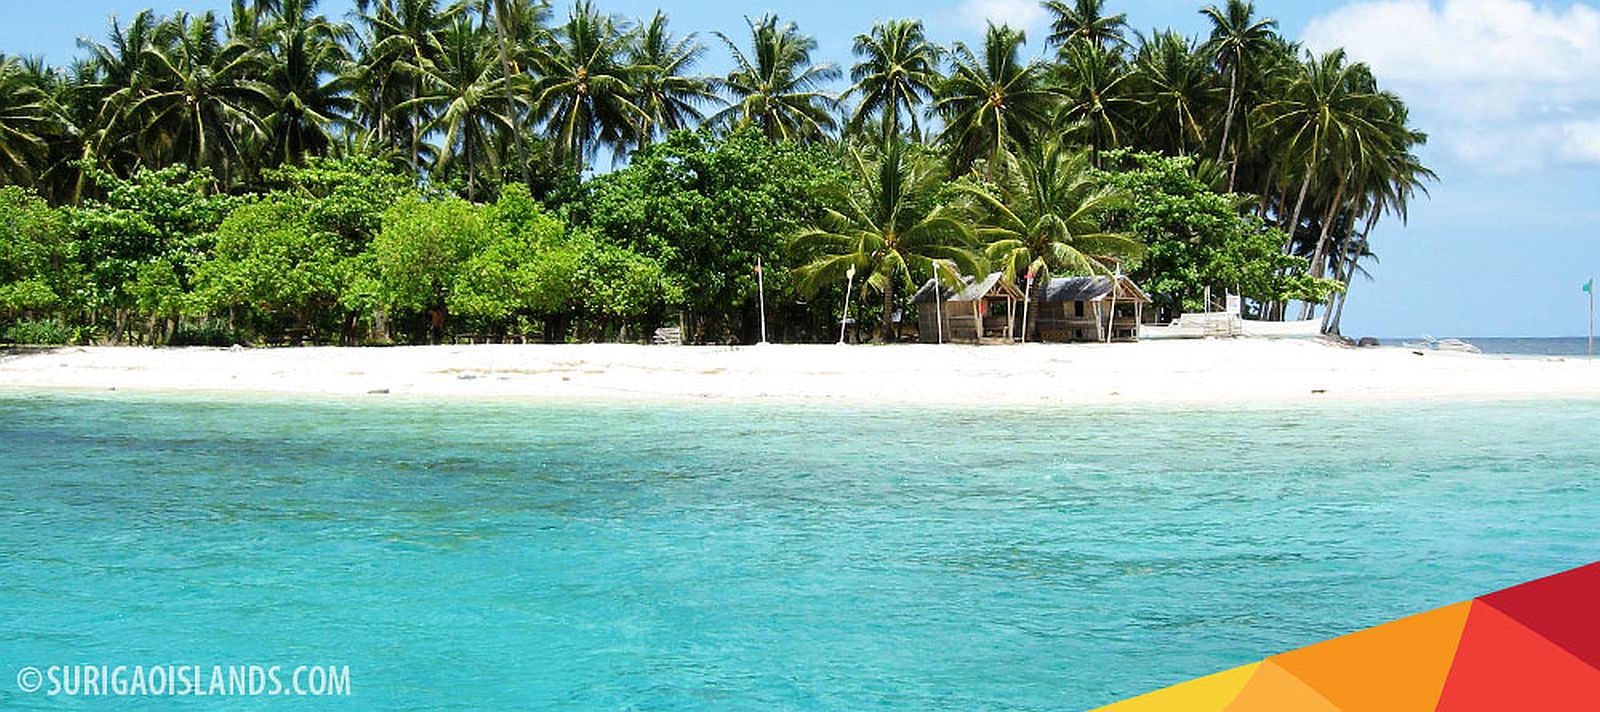 PHILIPPIINEN REISEN - INSELN in MINDANAO - Touristische Beschreibung für die Mindanao Insel Basul